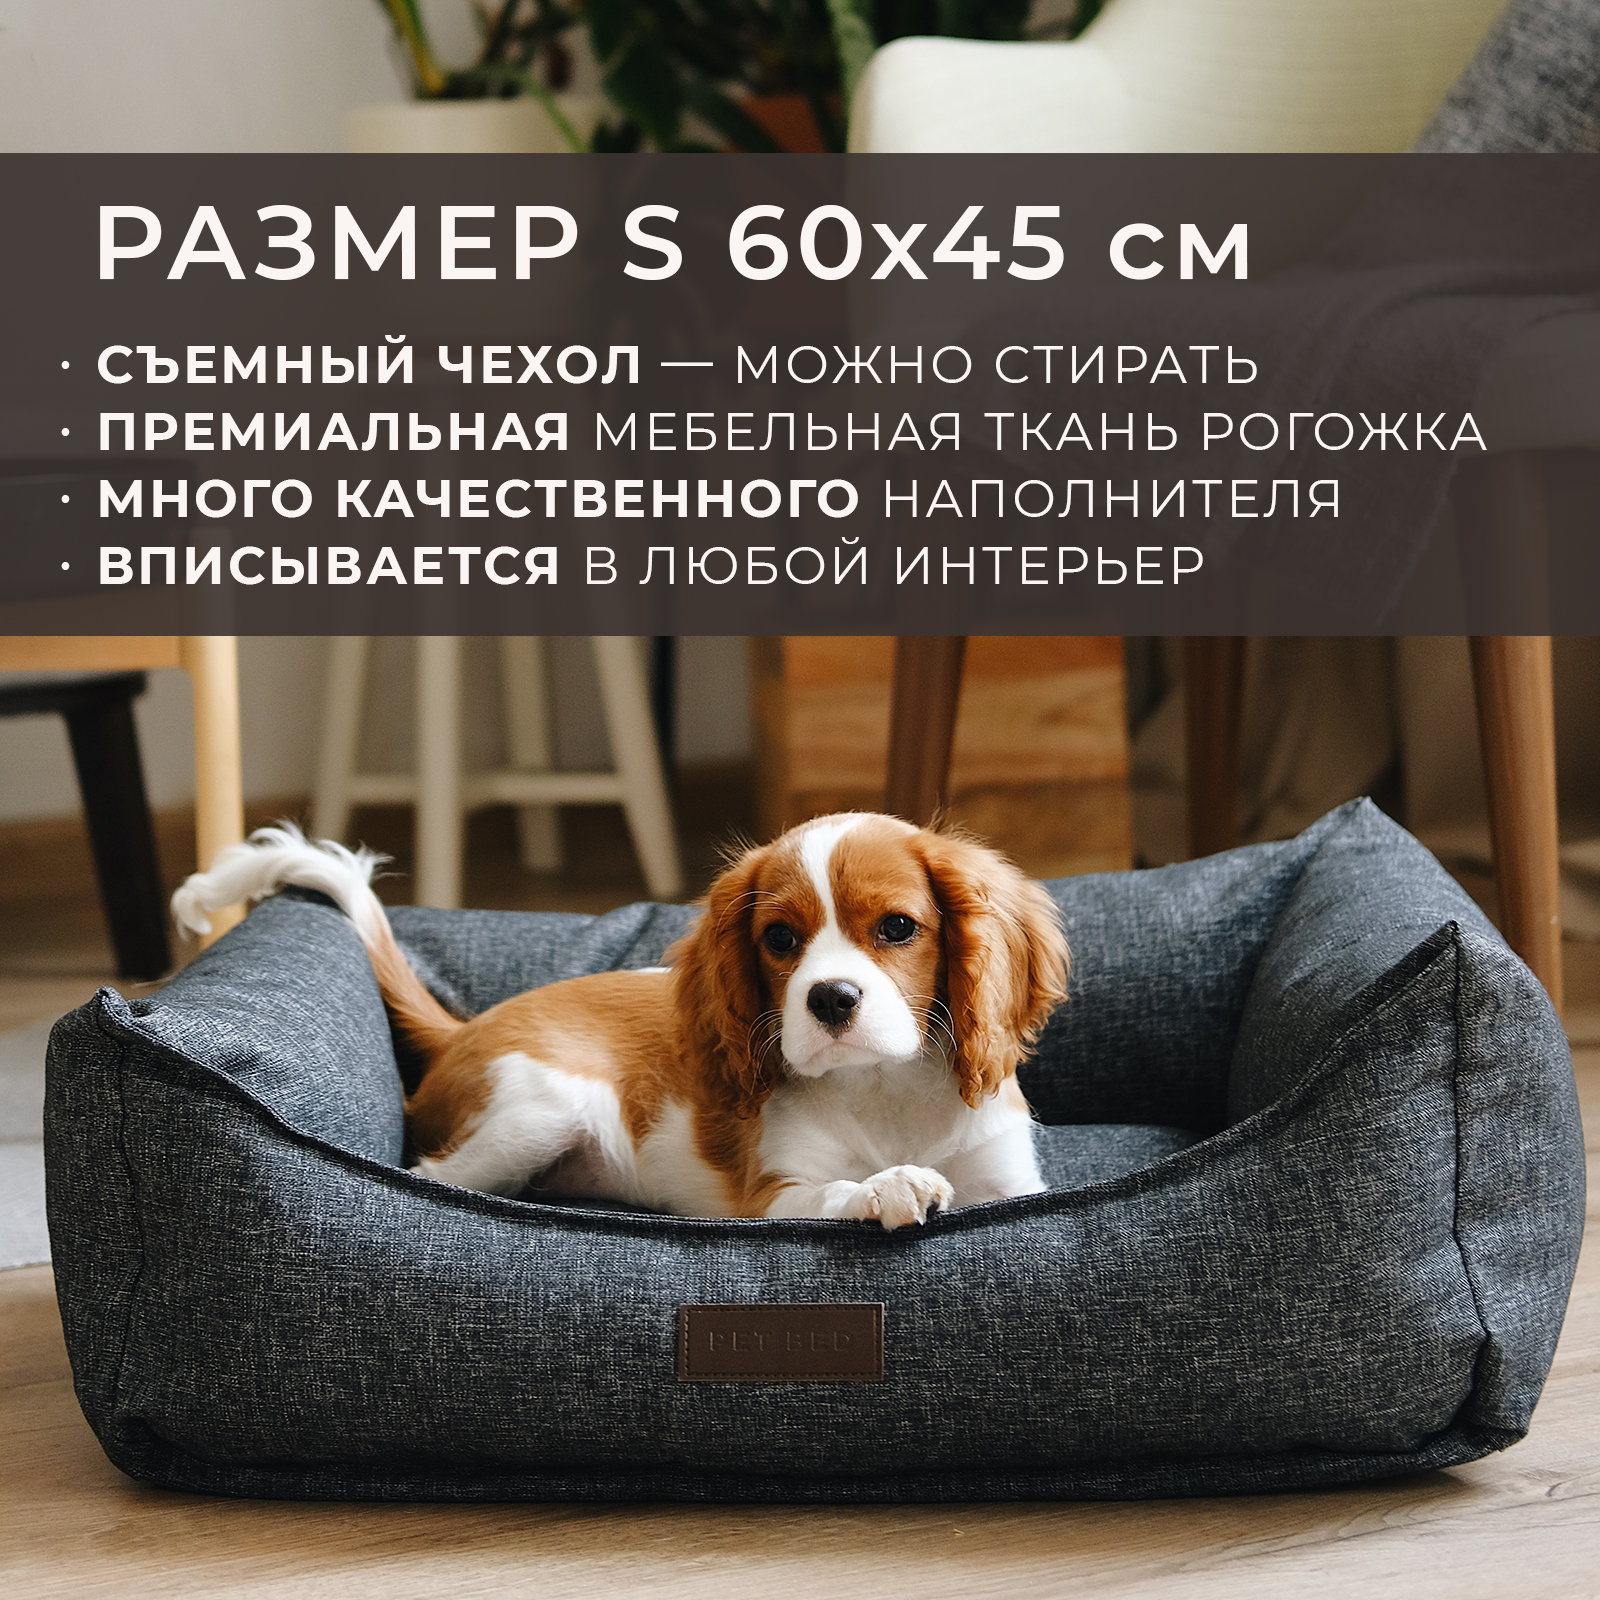 Лежанка для животных PET BED со съемным чехлом, темно-серая, рогожка, размер S, 60х45 см